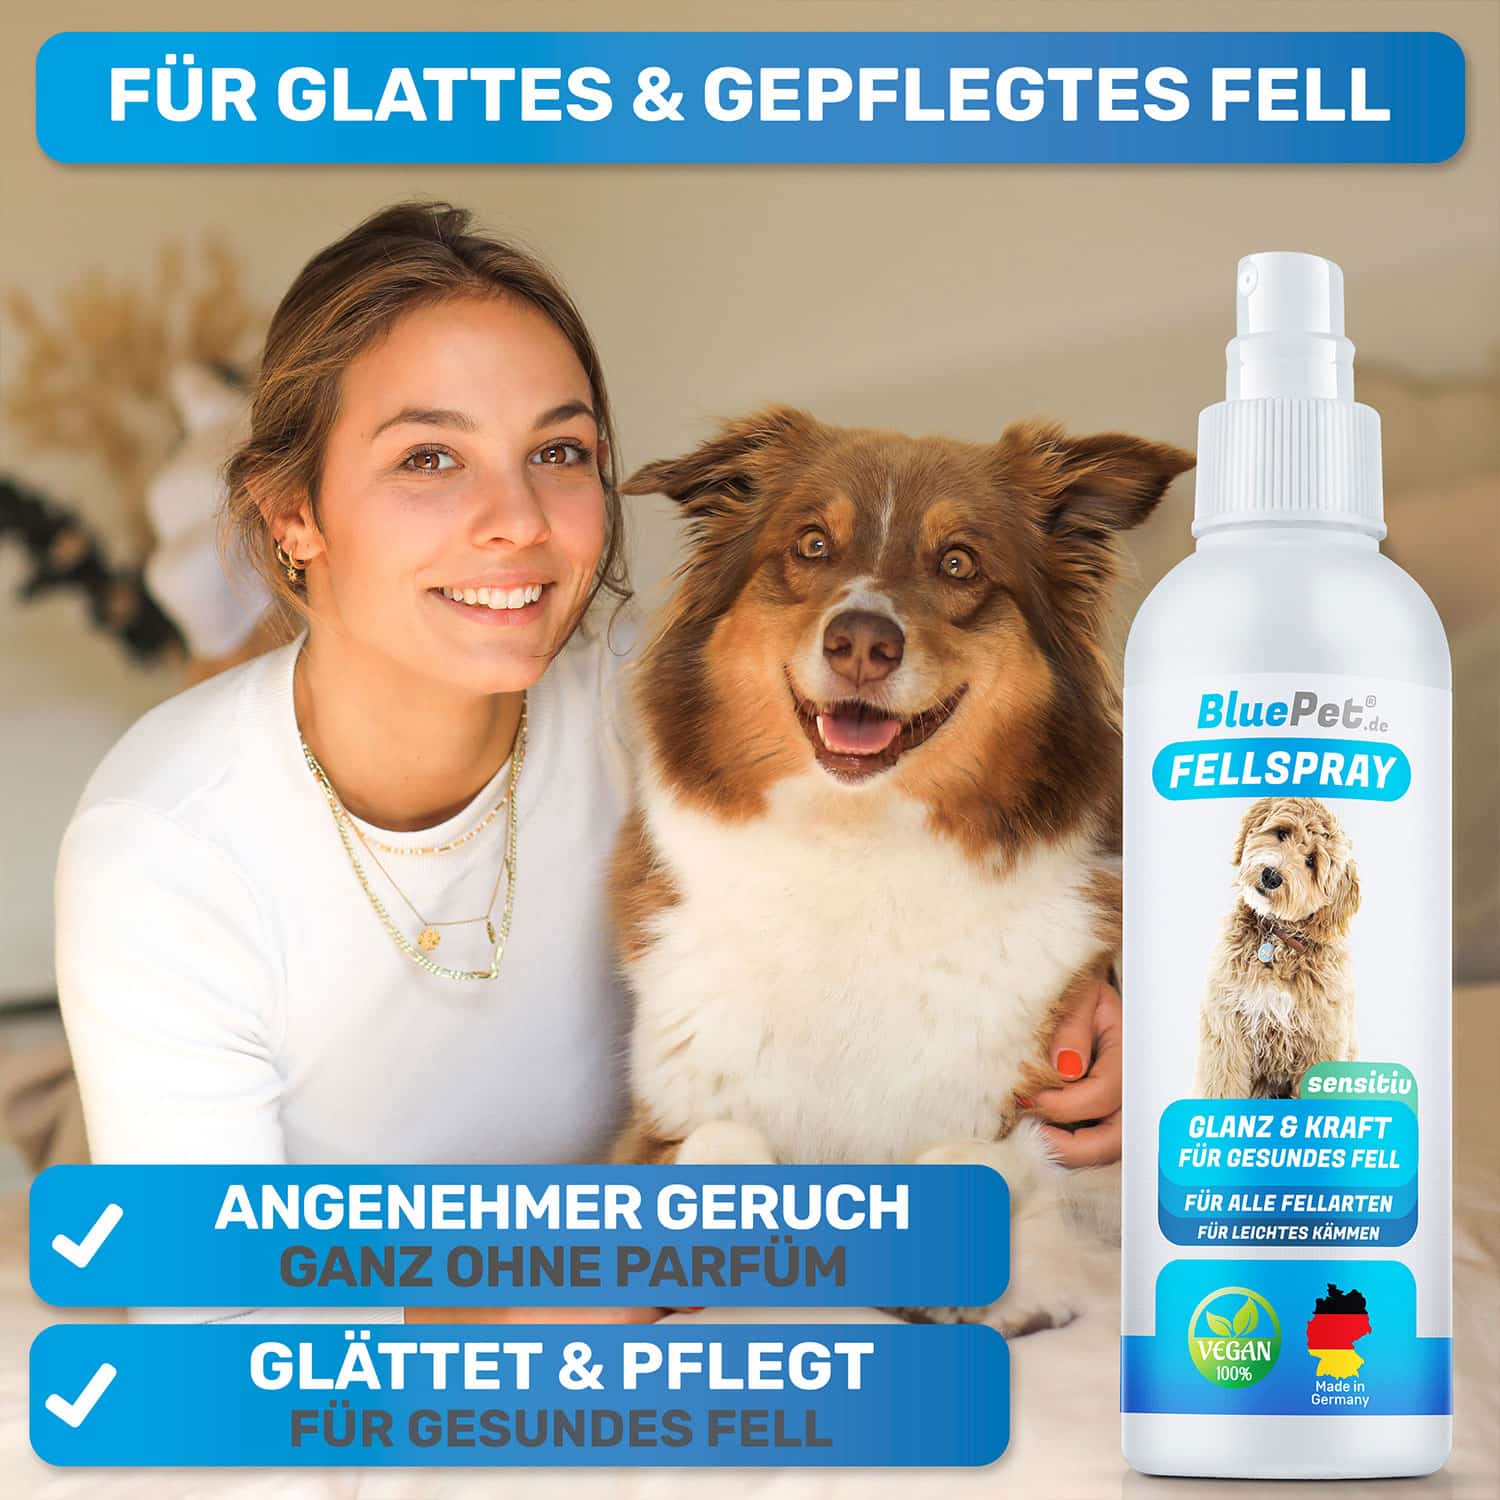 Fellspray von BluePet das pflegt und glättet das Fell für bessere Kämmbarkeit und einen gesunden Hund und Katze Hergestellt in Deutschland mit angenehmem Geruch für sensible Tiere